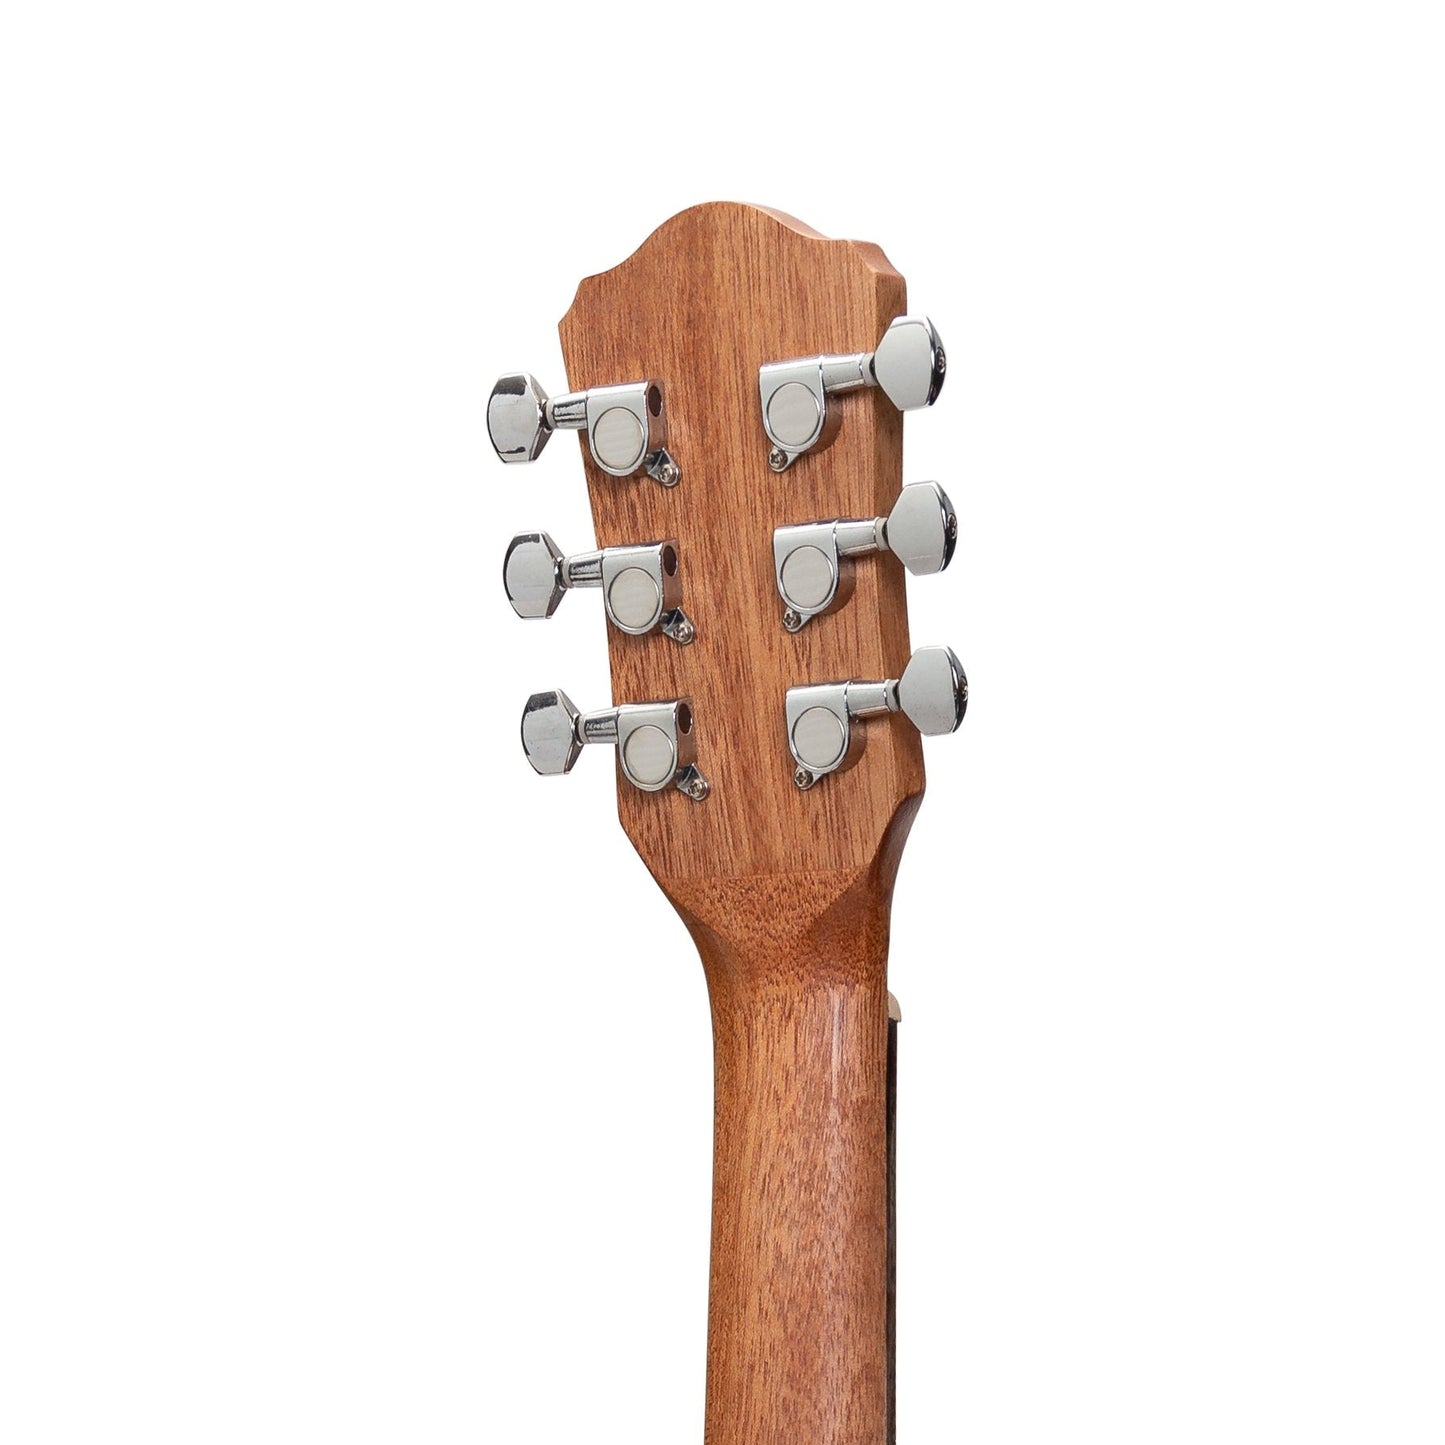 Martinez Acoustic Babe Traveller Guitar (Mindi-Wood)